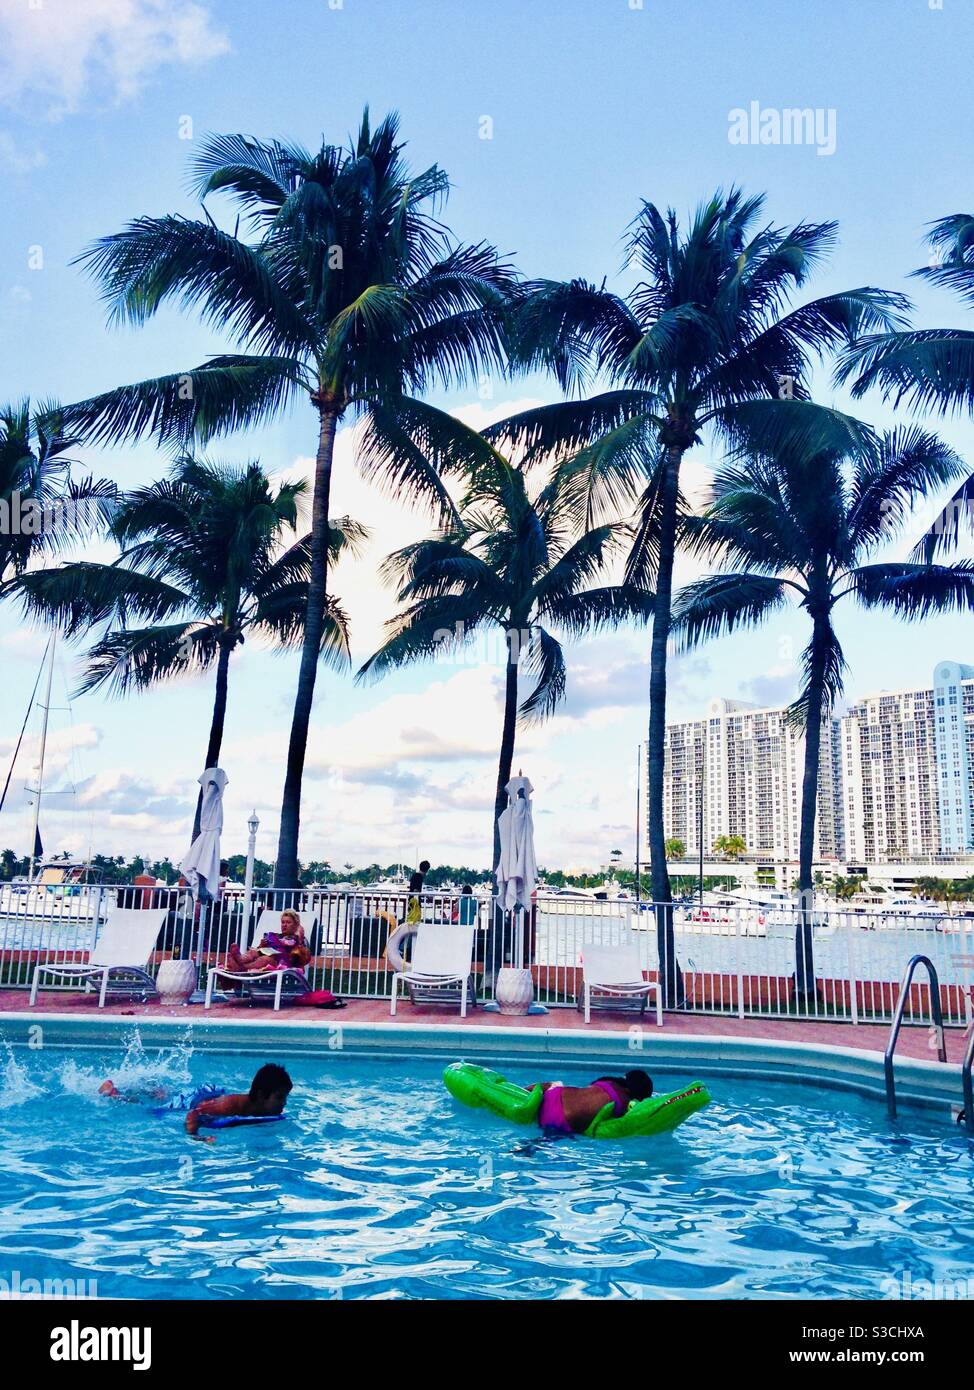 Ein tropisches Traumurlaubsziel in Miami, Florida, USA mit wiegenden Palmen, einladendem türkisfarbenem Swimmingpool, Blick auf das Meer und modernen Hochhäusern in der Ferne Stockfoto